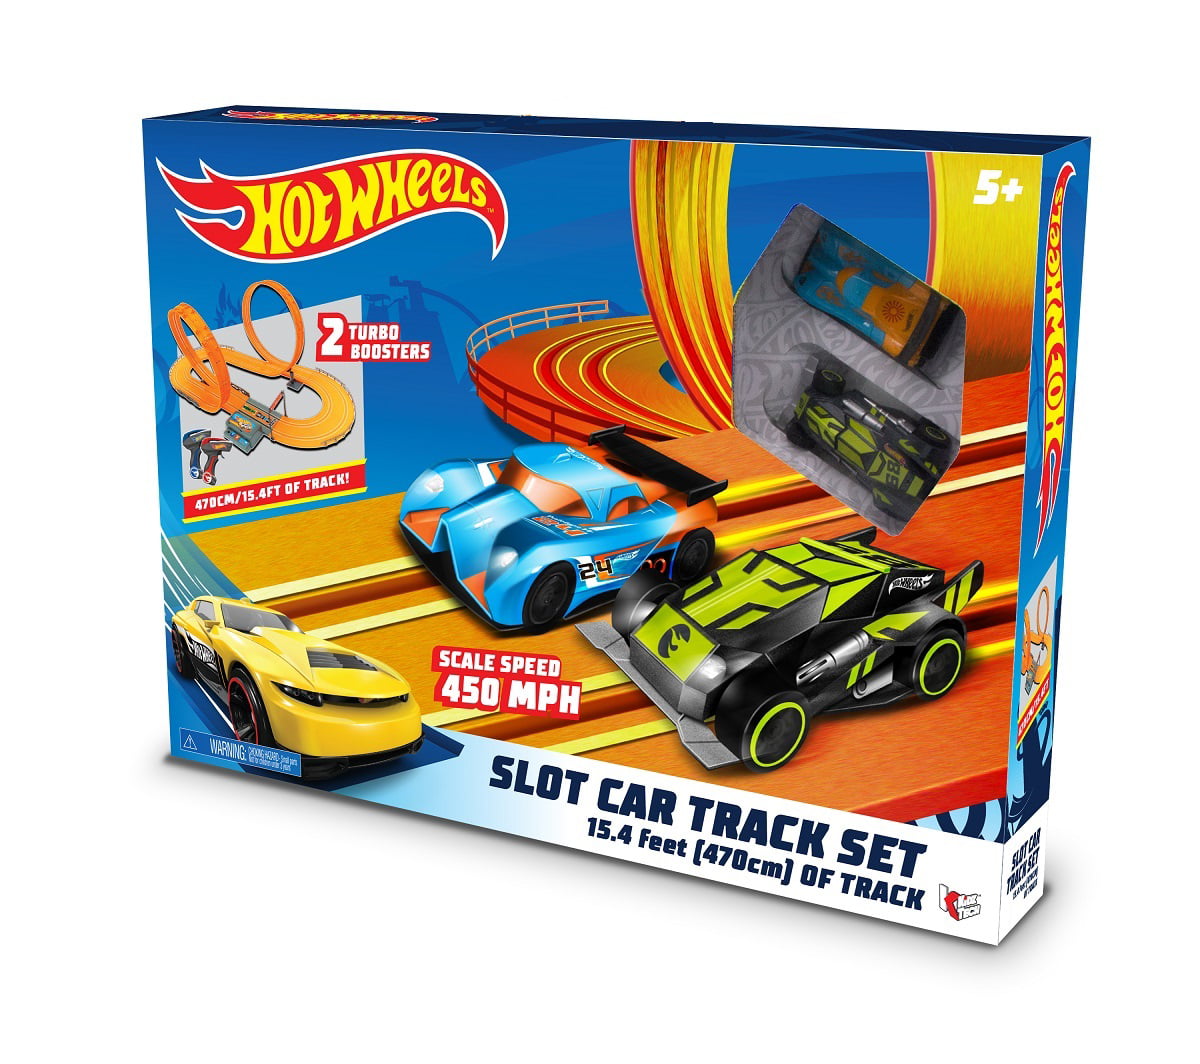 Hot Wheels Slot Tracks - Walmart.com slot car racing sets at walmart. 